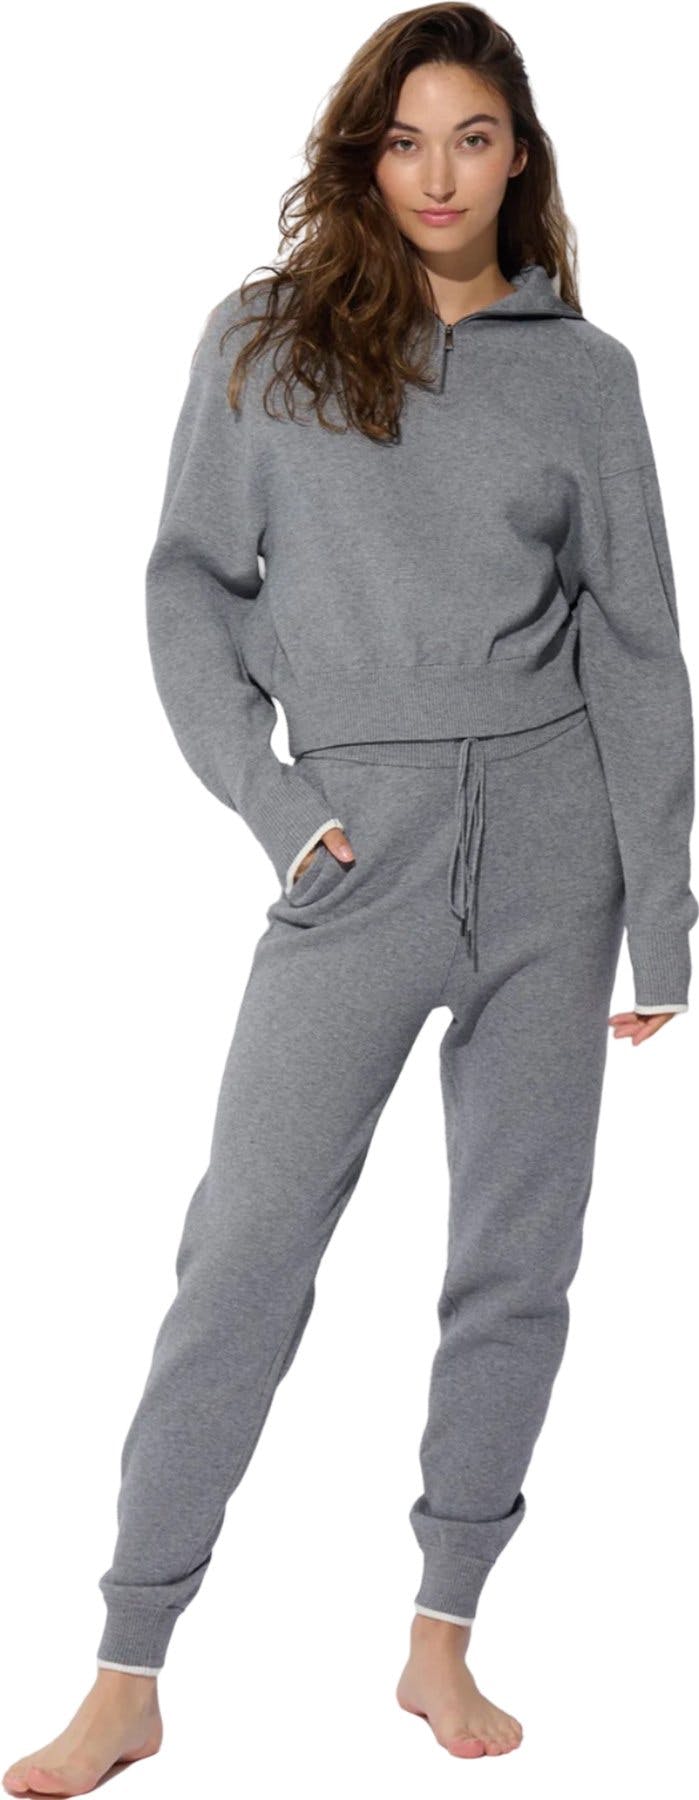 Numéro de l'image de la galerie de produits 1 pour le produit Pantalon de jogging en tricot - Femme